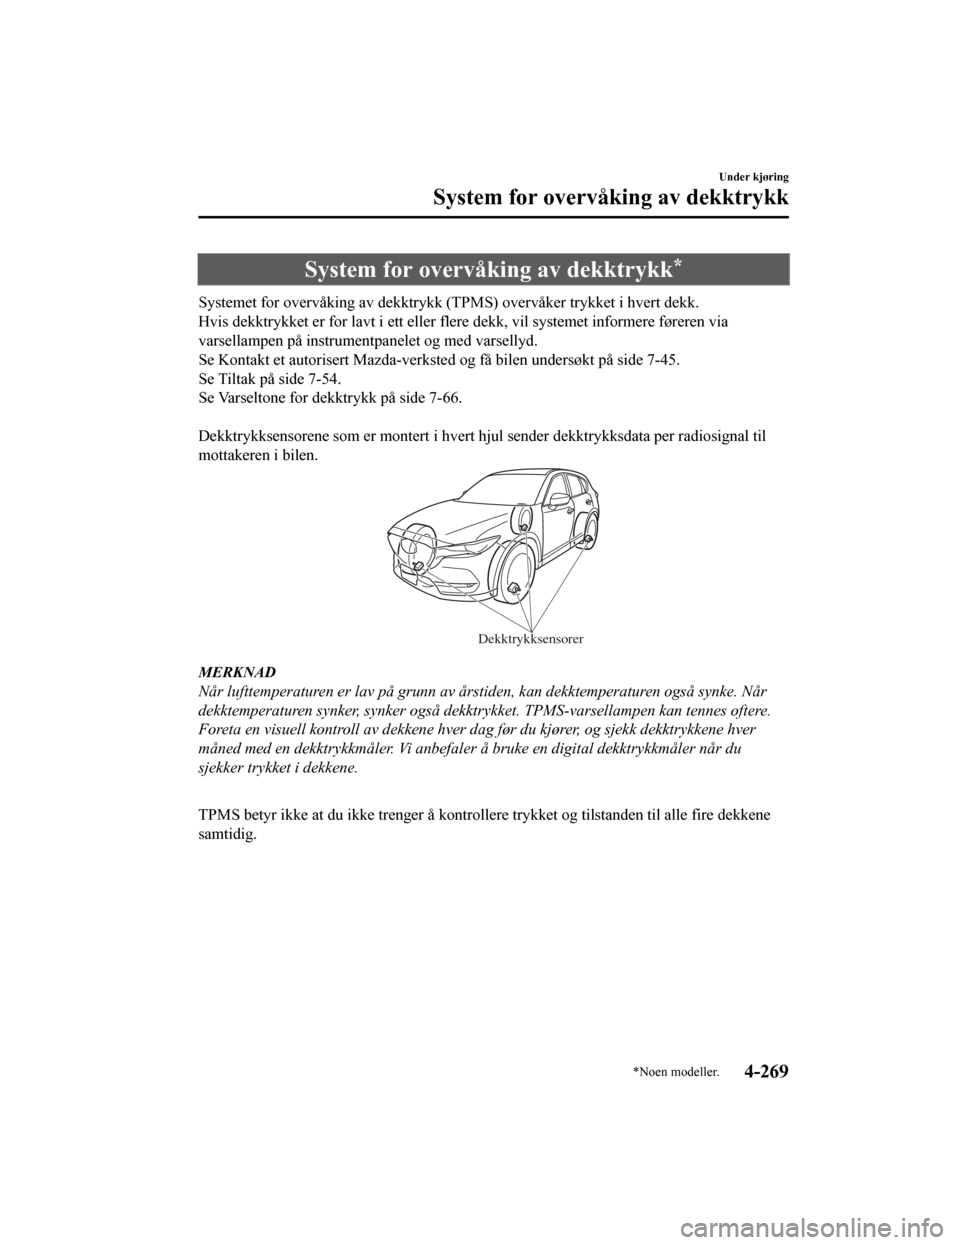 MAZDA MODEL CX-5 2019  Brukerhåndbok (in Norwegian) System for overvåking av dekktrykk*
Systemet for overvåking av dekktrykk (TPMS) overvåker trykket i hvert dekk.
Hvis dekktrykket er for lavt i et t eller flere dekk, vil systemet informere føreren